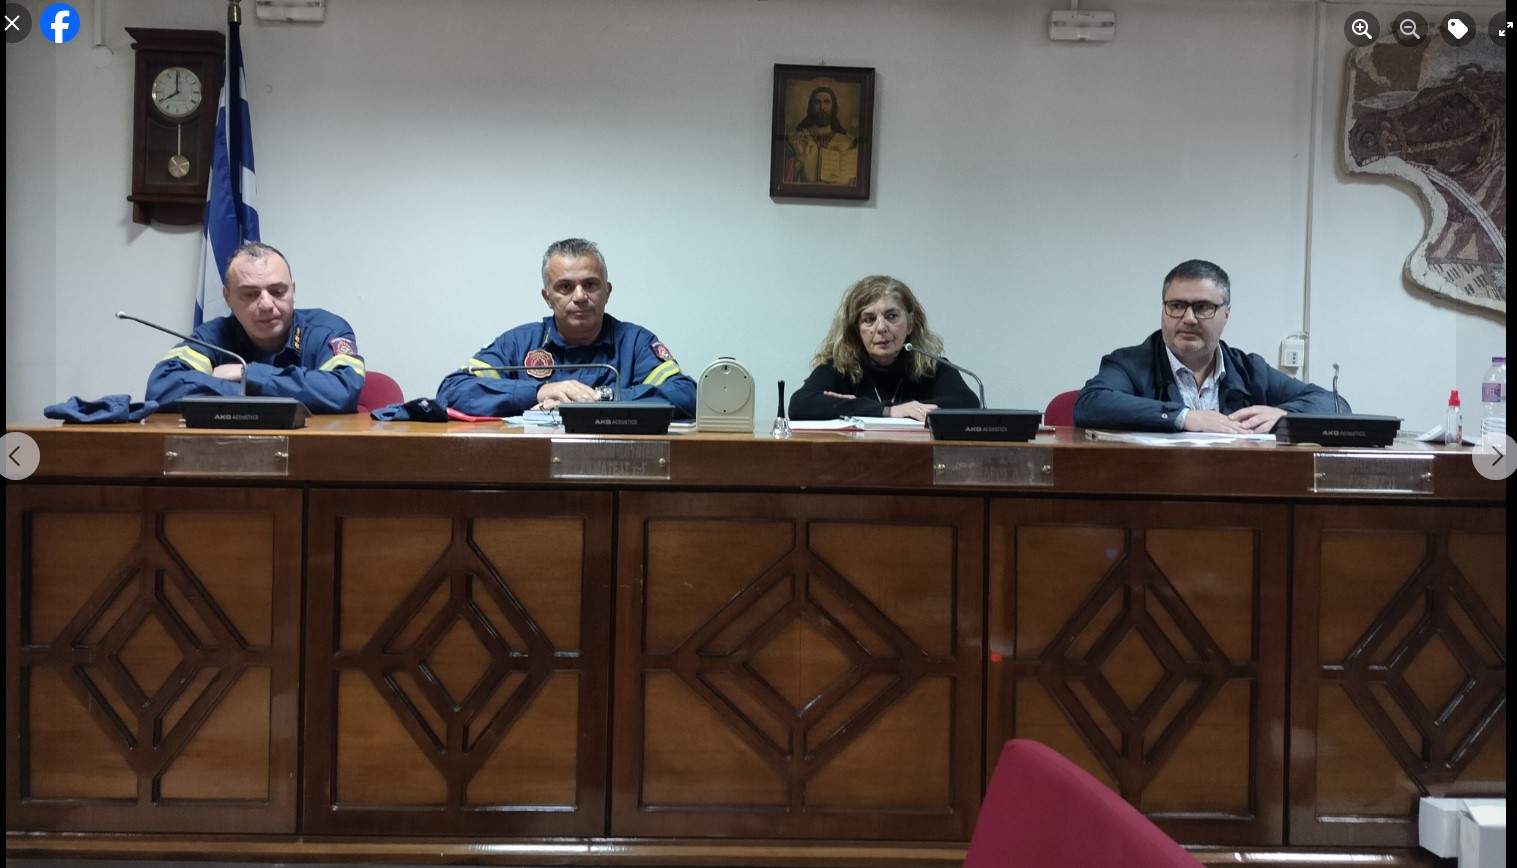 Σύσκεψη με αντικείμενο την πολιτική προστασία στο Δήμο Εορδαίας με τους Προέδρους των Κοινοτήτων